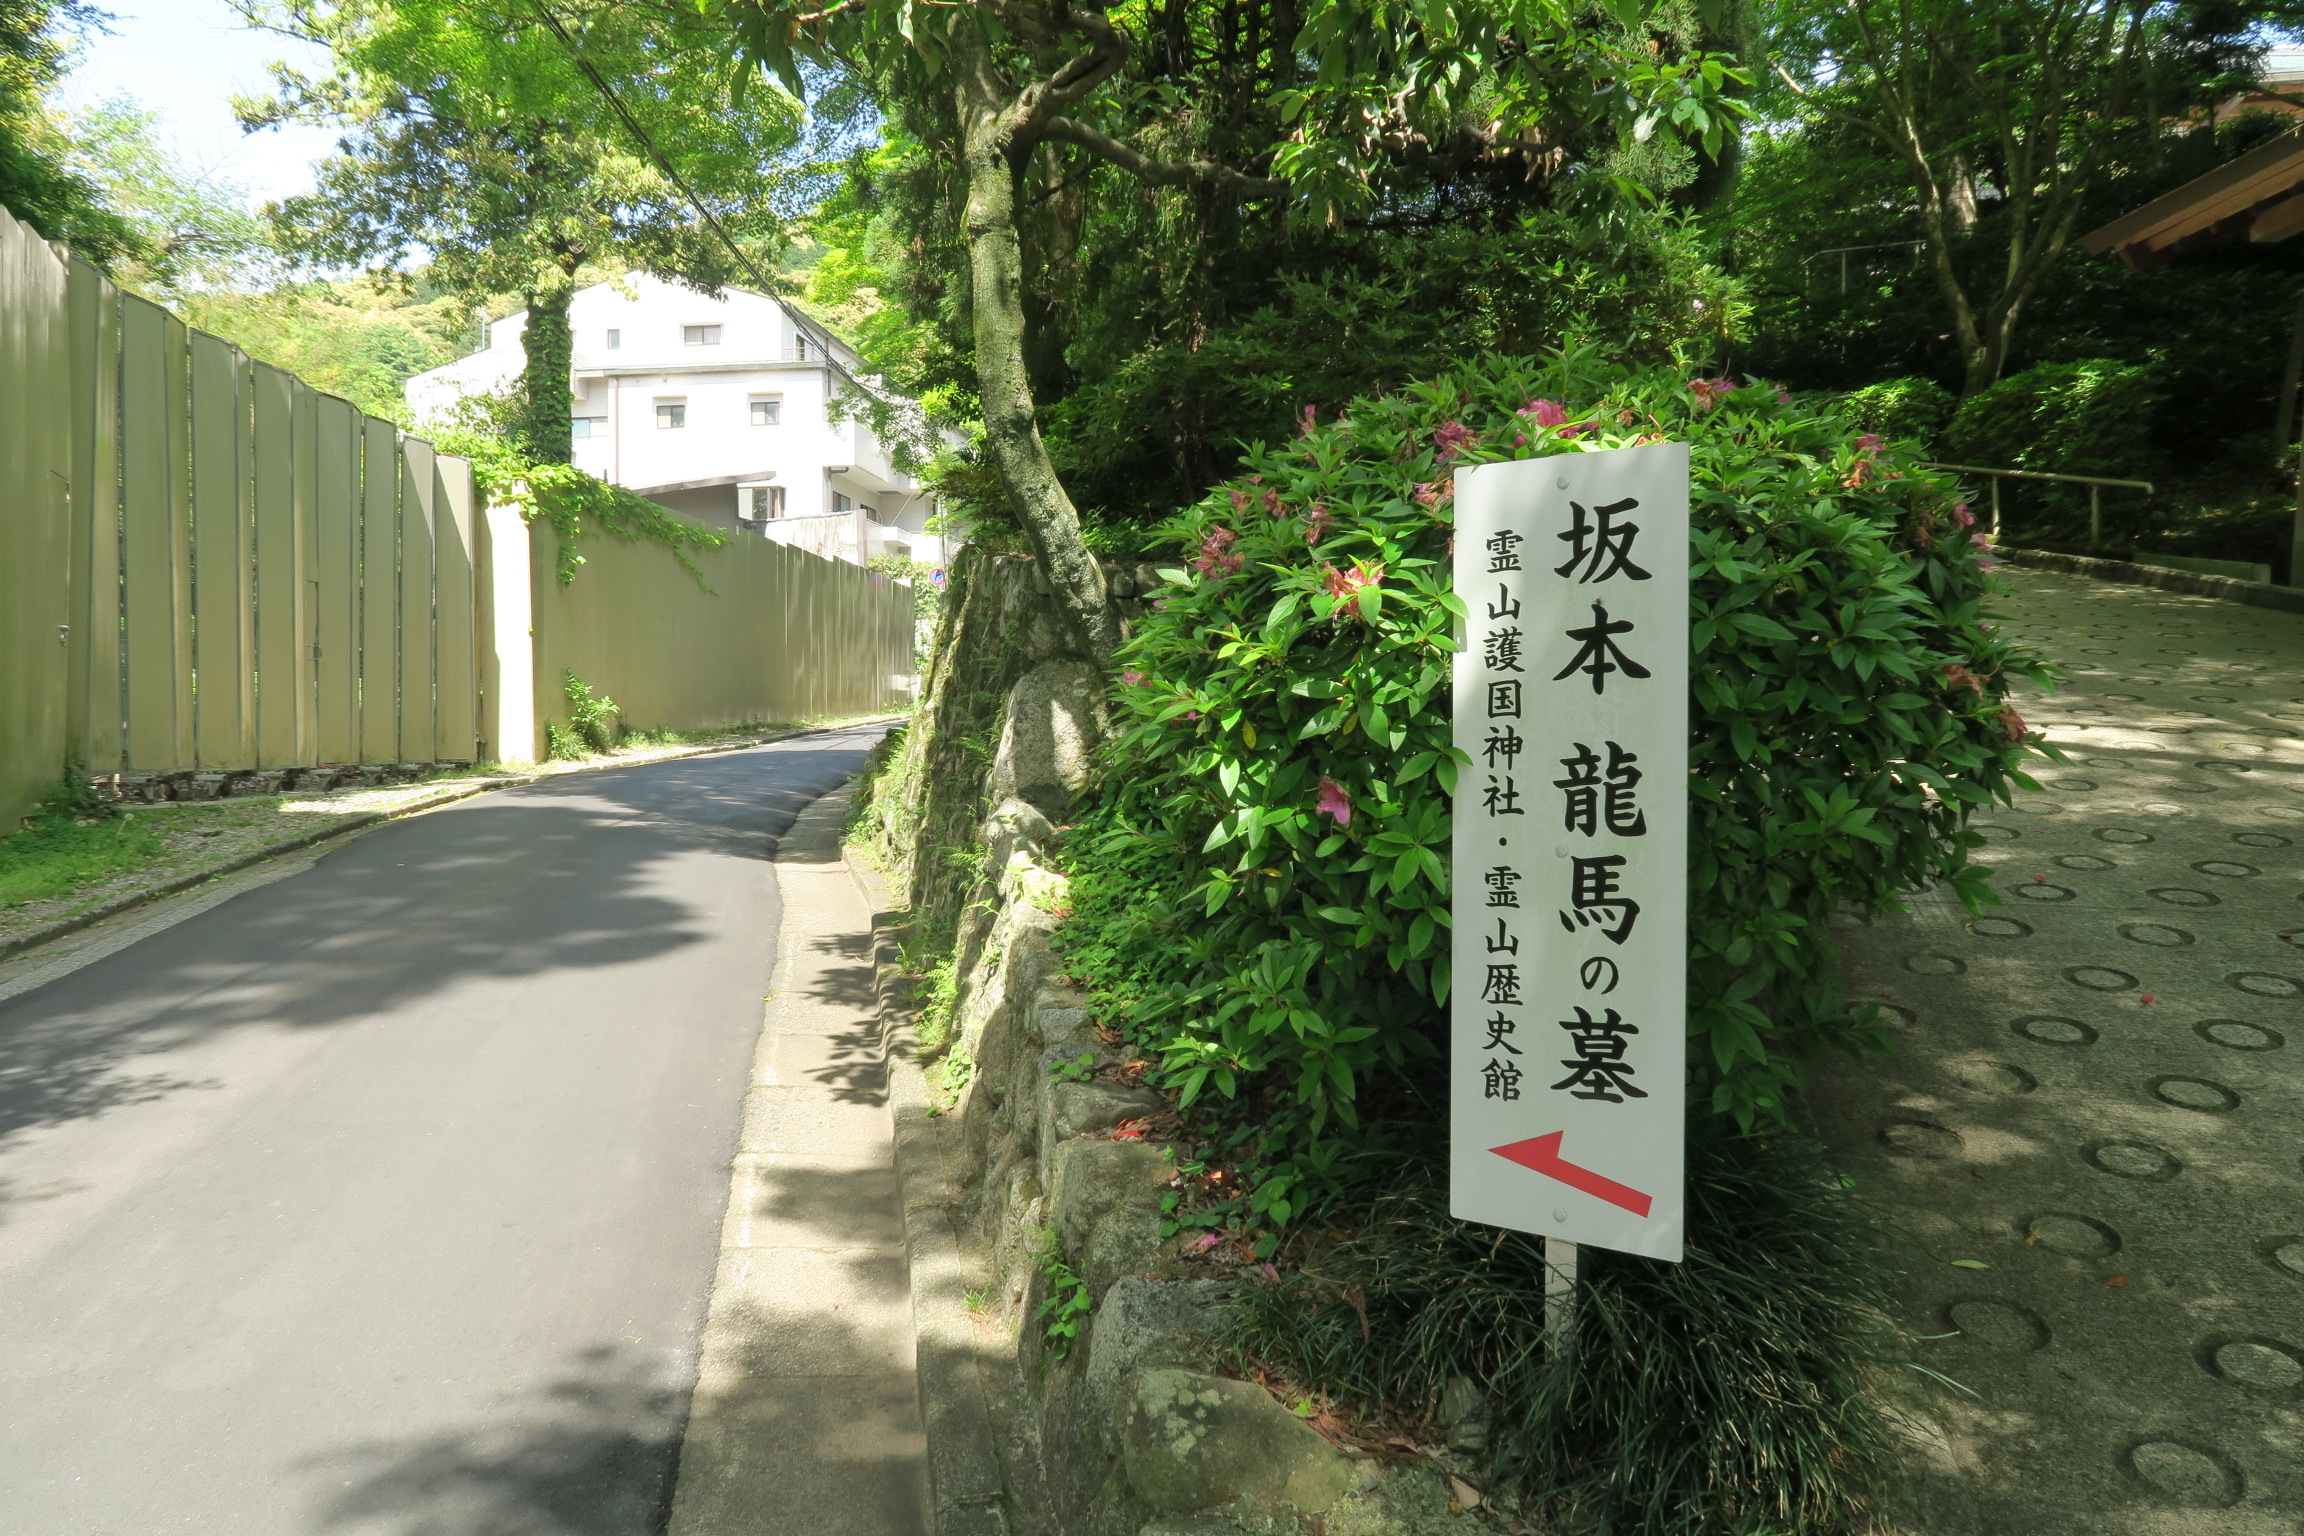 「坂本龍馬の墓」がある霊山護国神社と、霊山歴史館の案内が出ています。